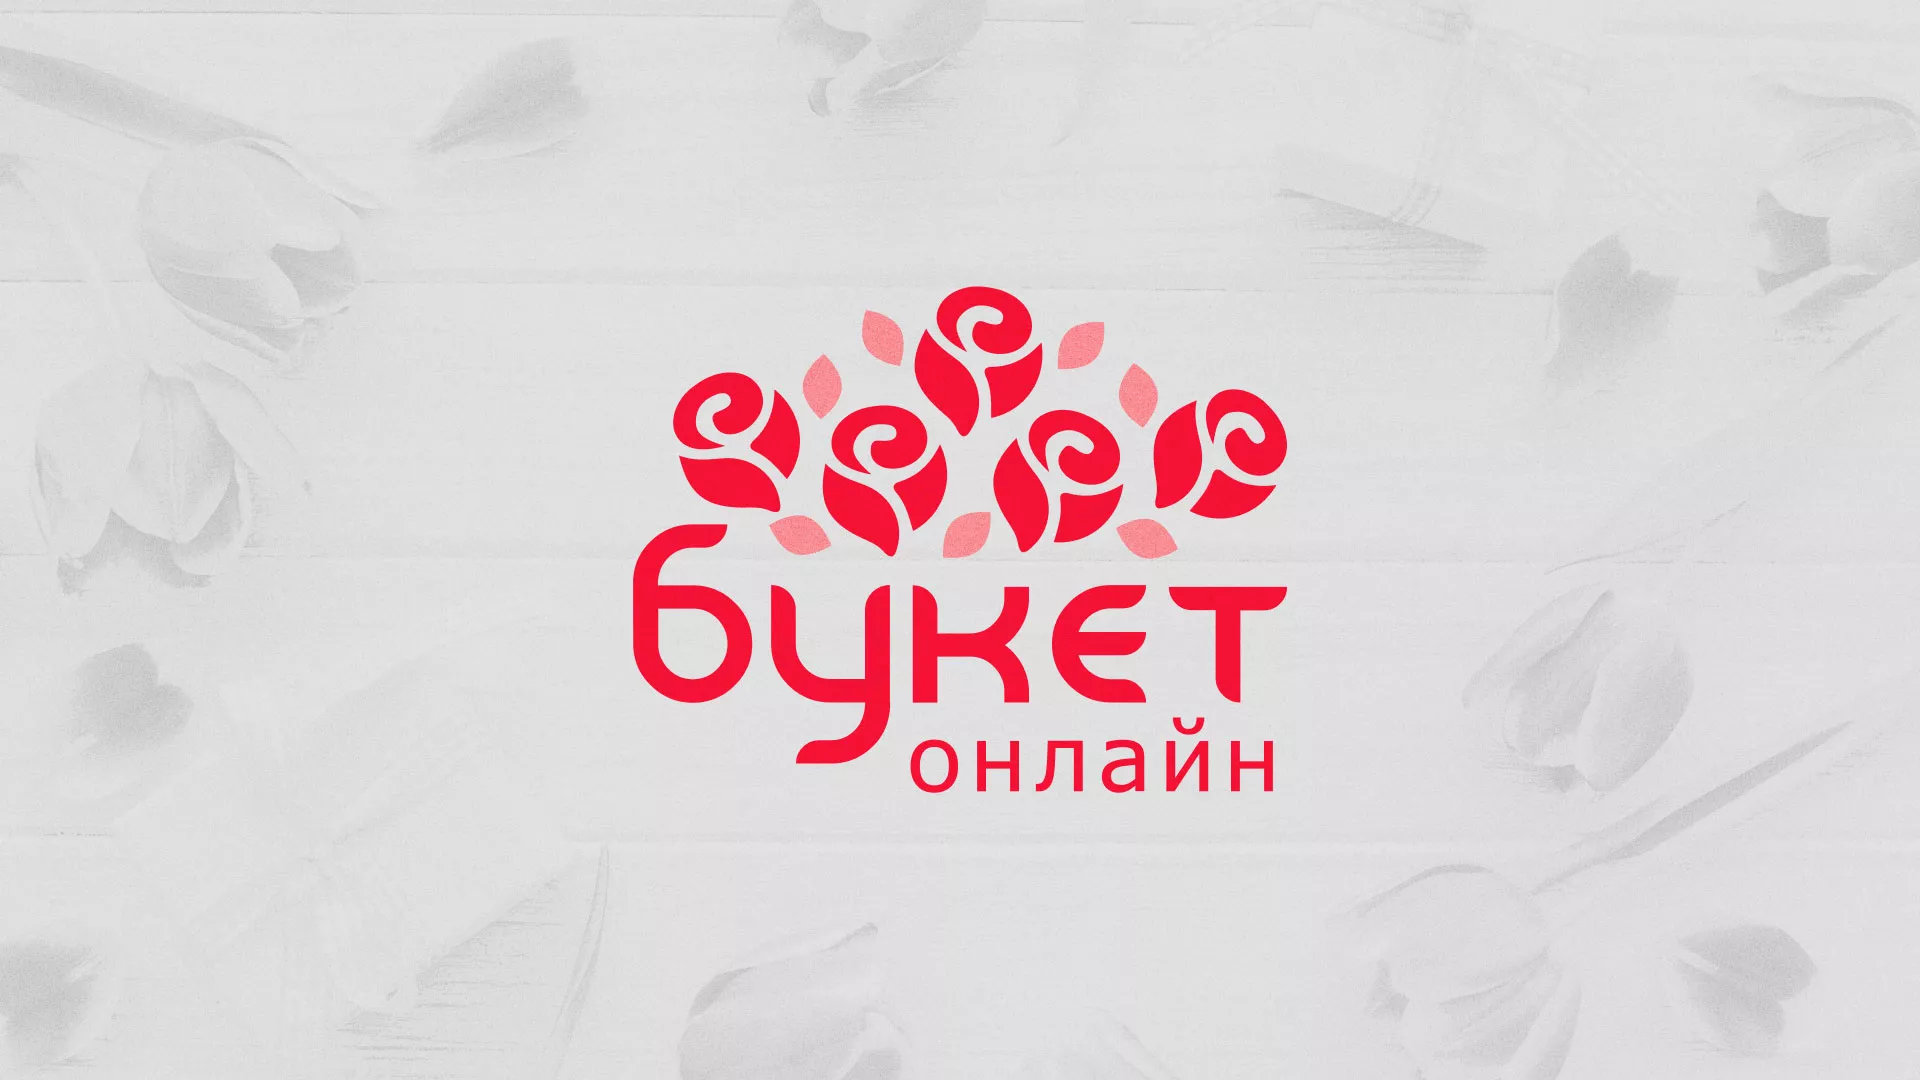 Создание интернет-магазина «Букет-онлайн» по цветам в Межгорье